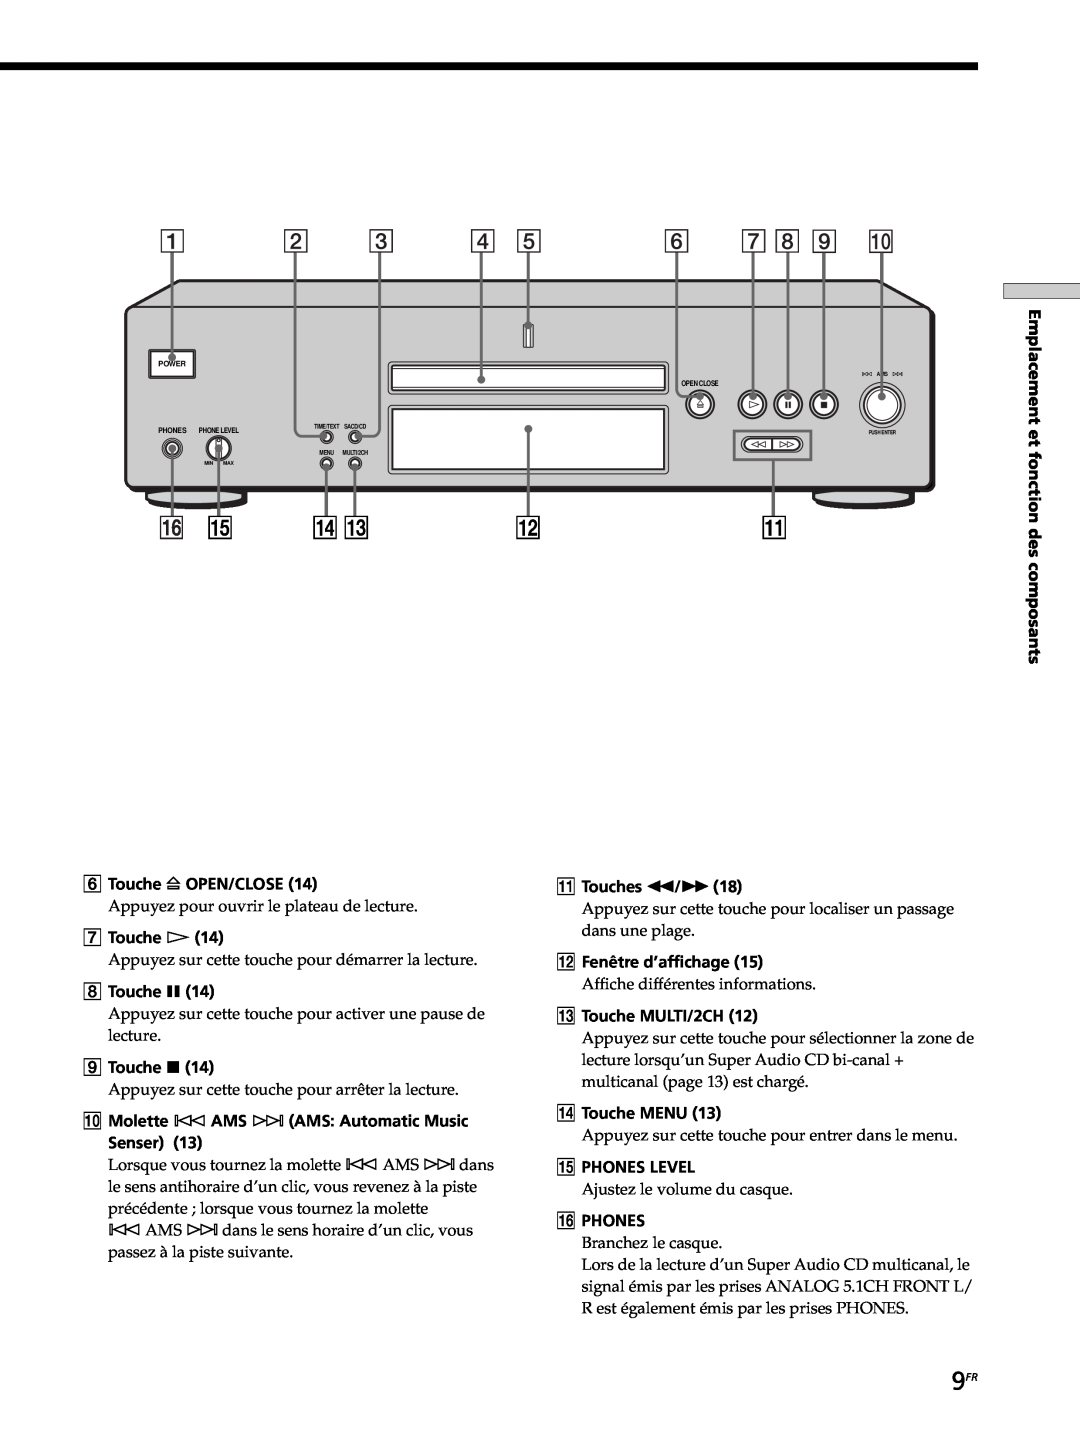 Sony SCD-XB770 operating instructions Emplacement et fonction des composants 